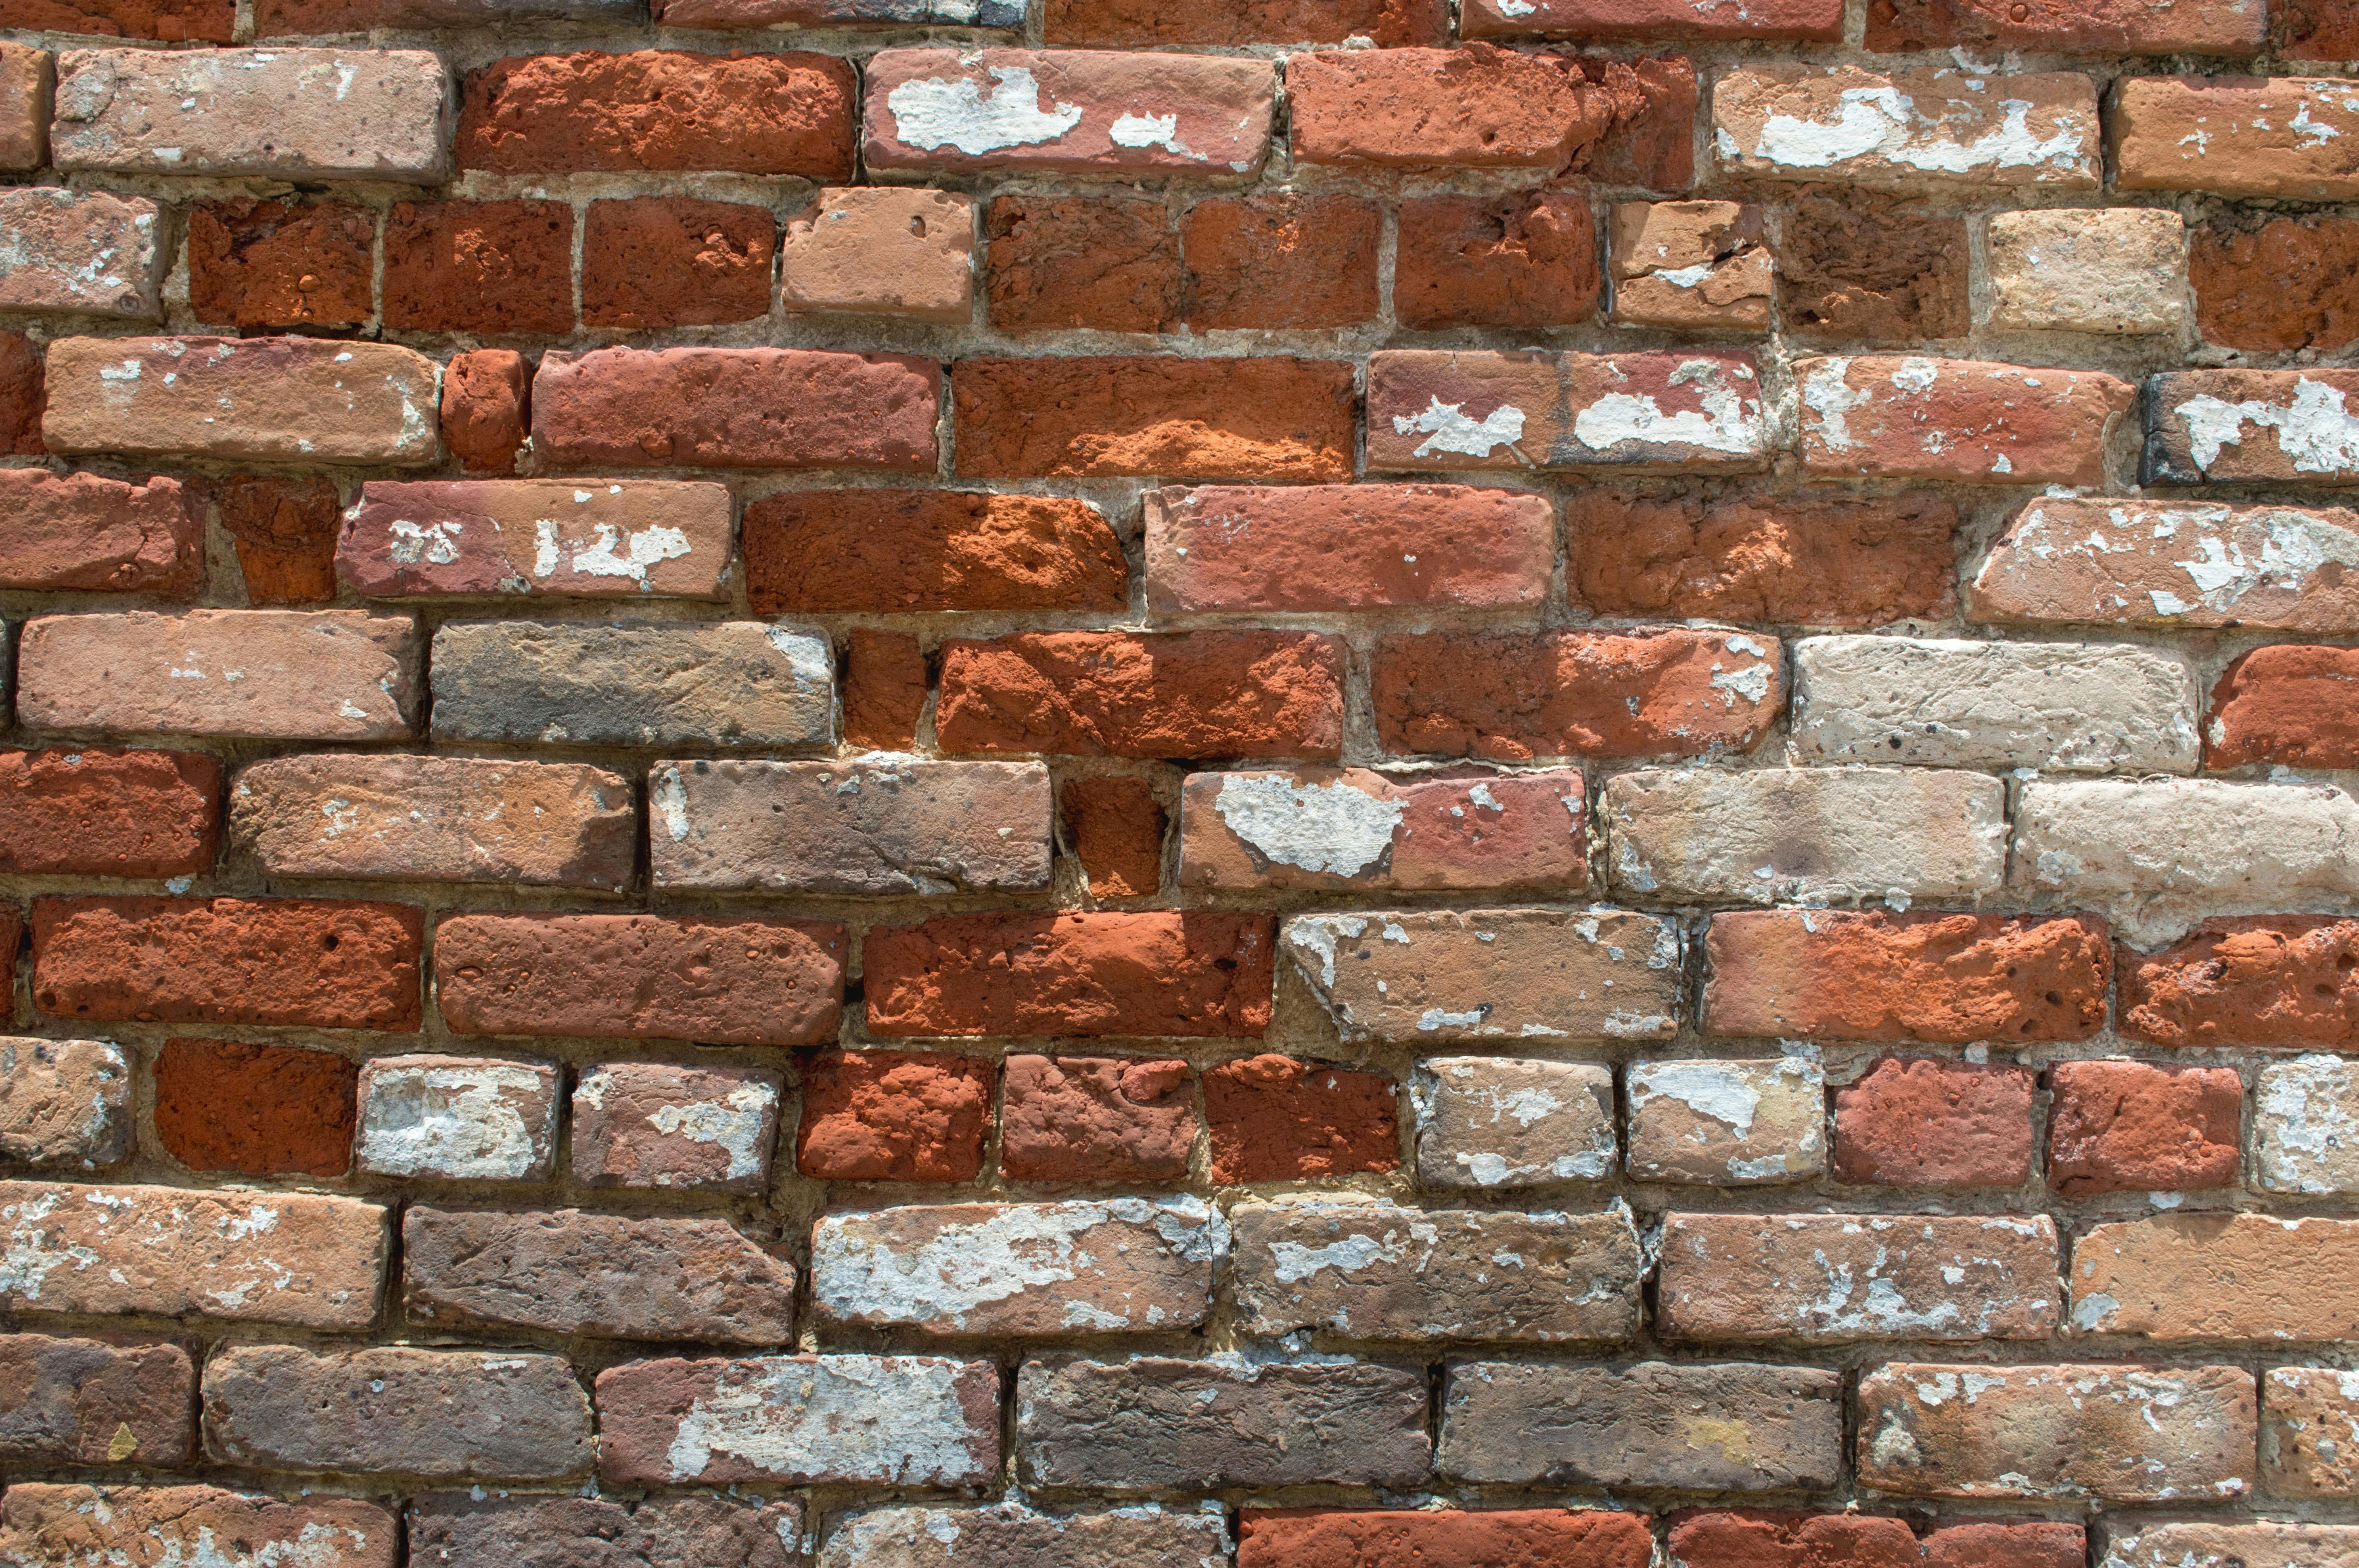 Dilapidated brick